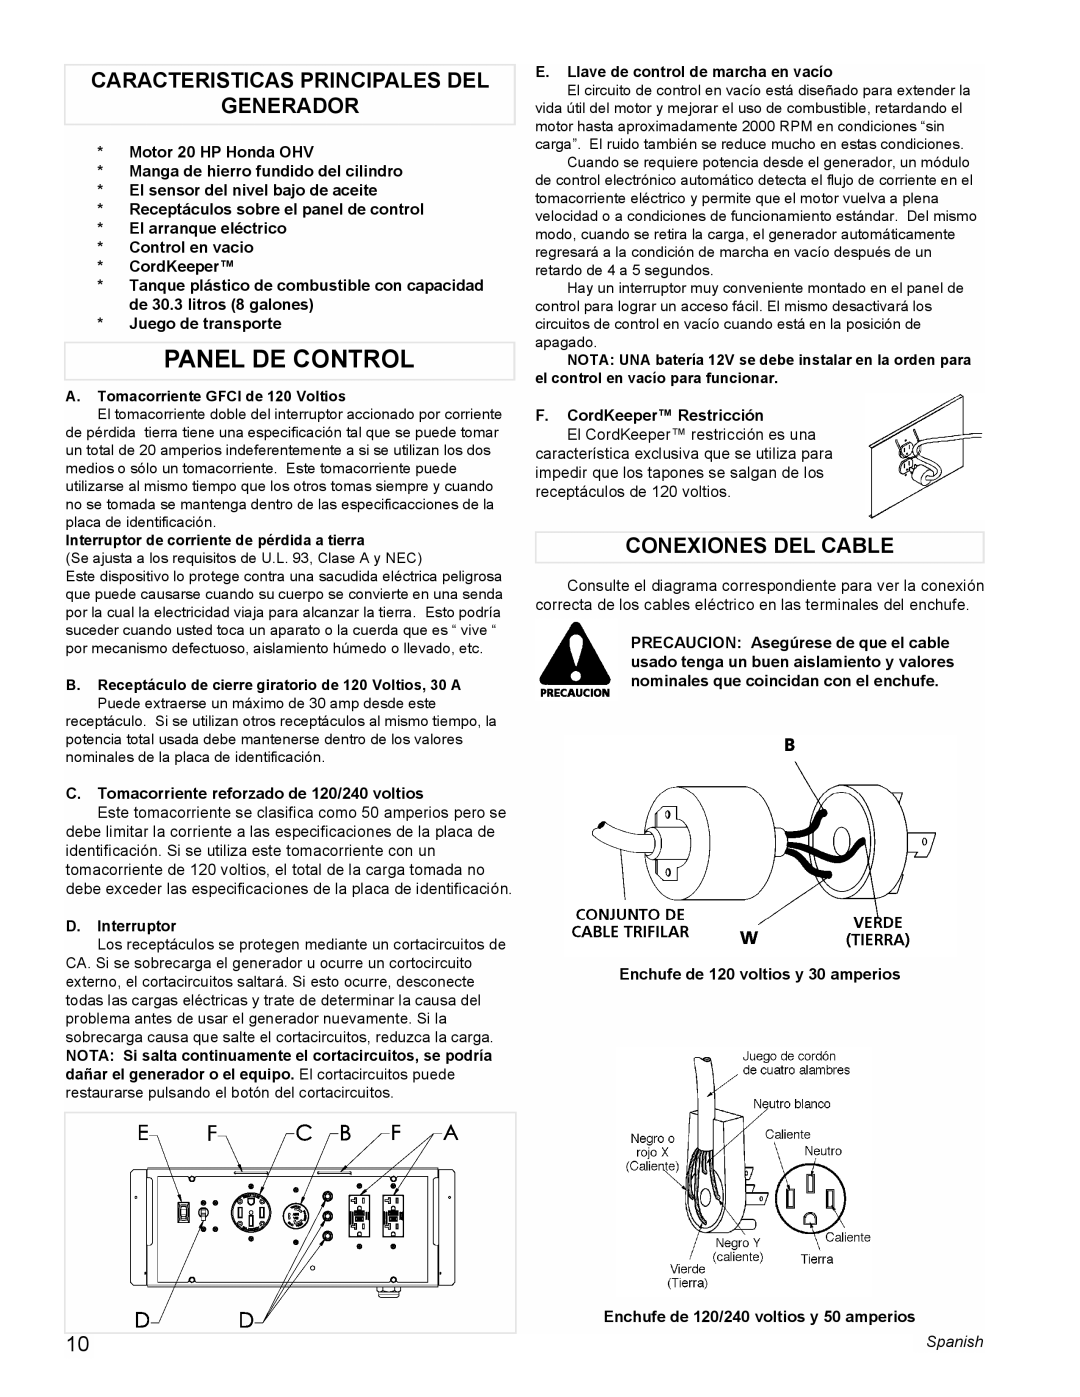 Coleman PM0601100 manual Panel De Control, Caracteristicas Principales Del Generador, Conexiones Del Cable 